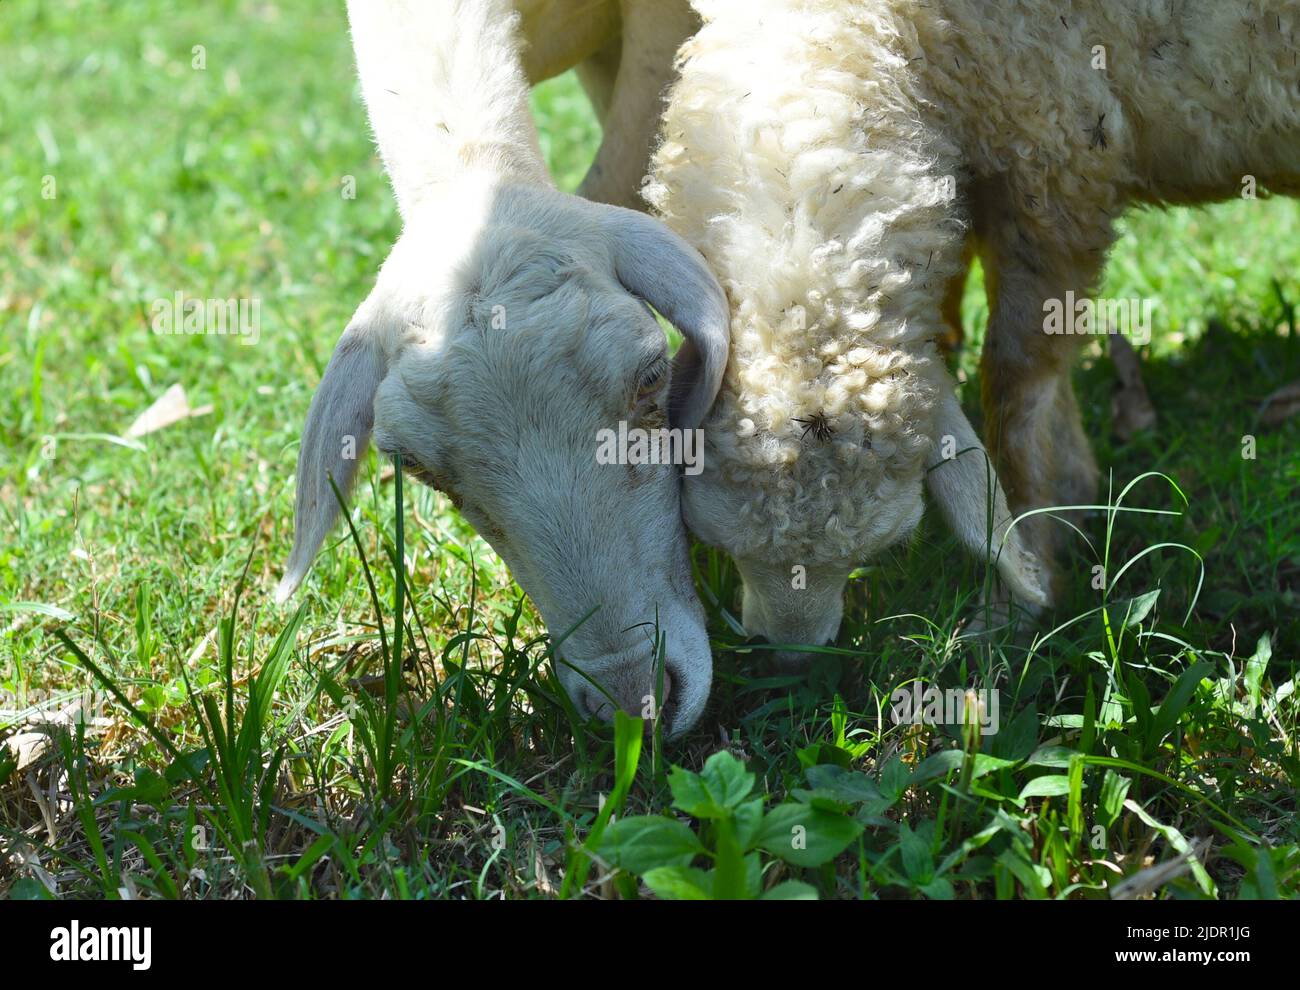 La mamá y el bebé ovejas nibbling hierba Foto de stock